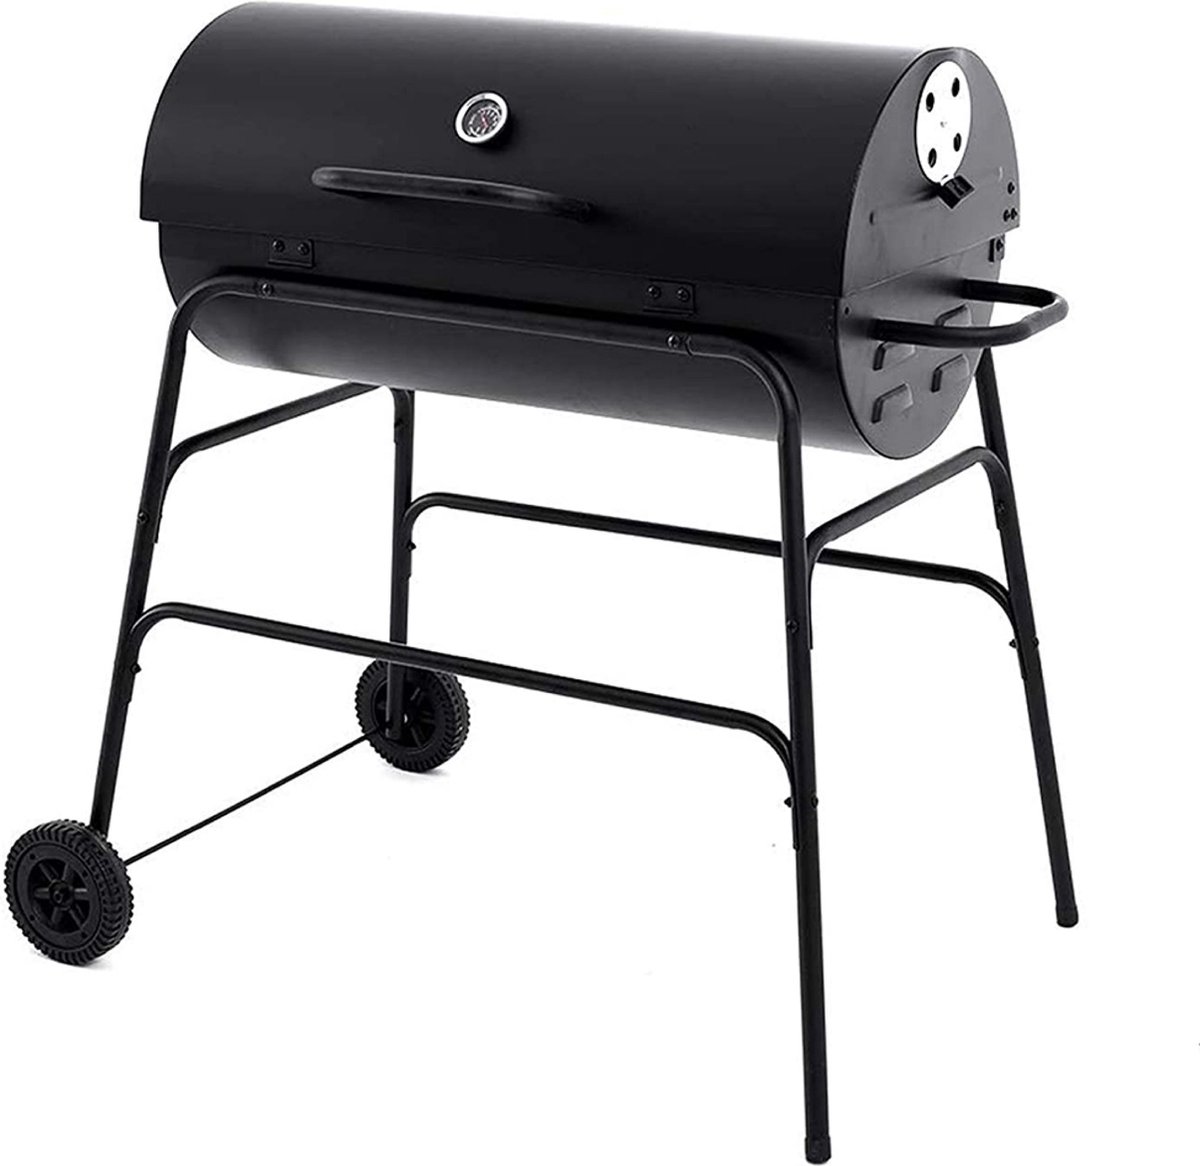 XL Houtskool Barbecue - BBQ - Verrijdbaar - Cilindervorm - Buitenkeuken